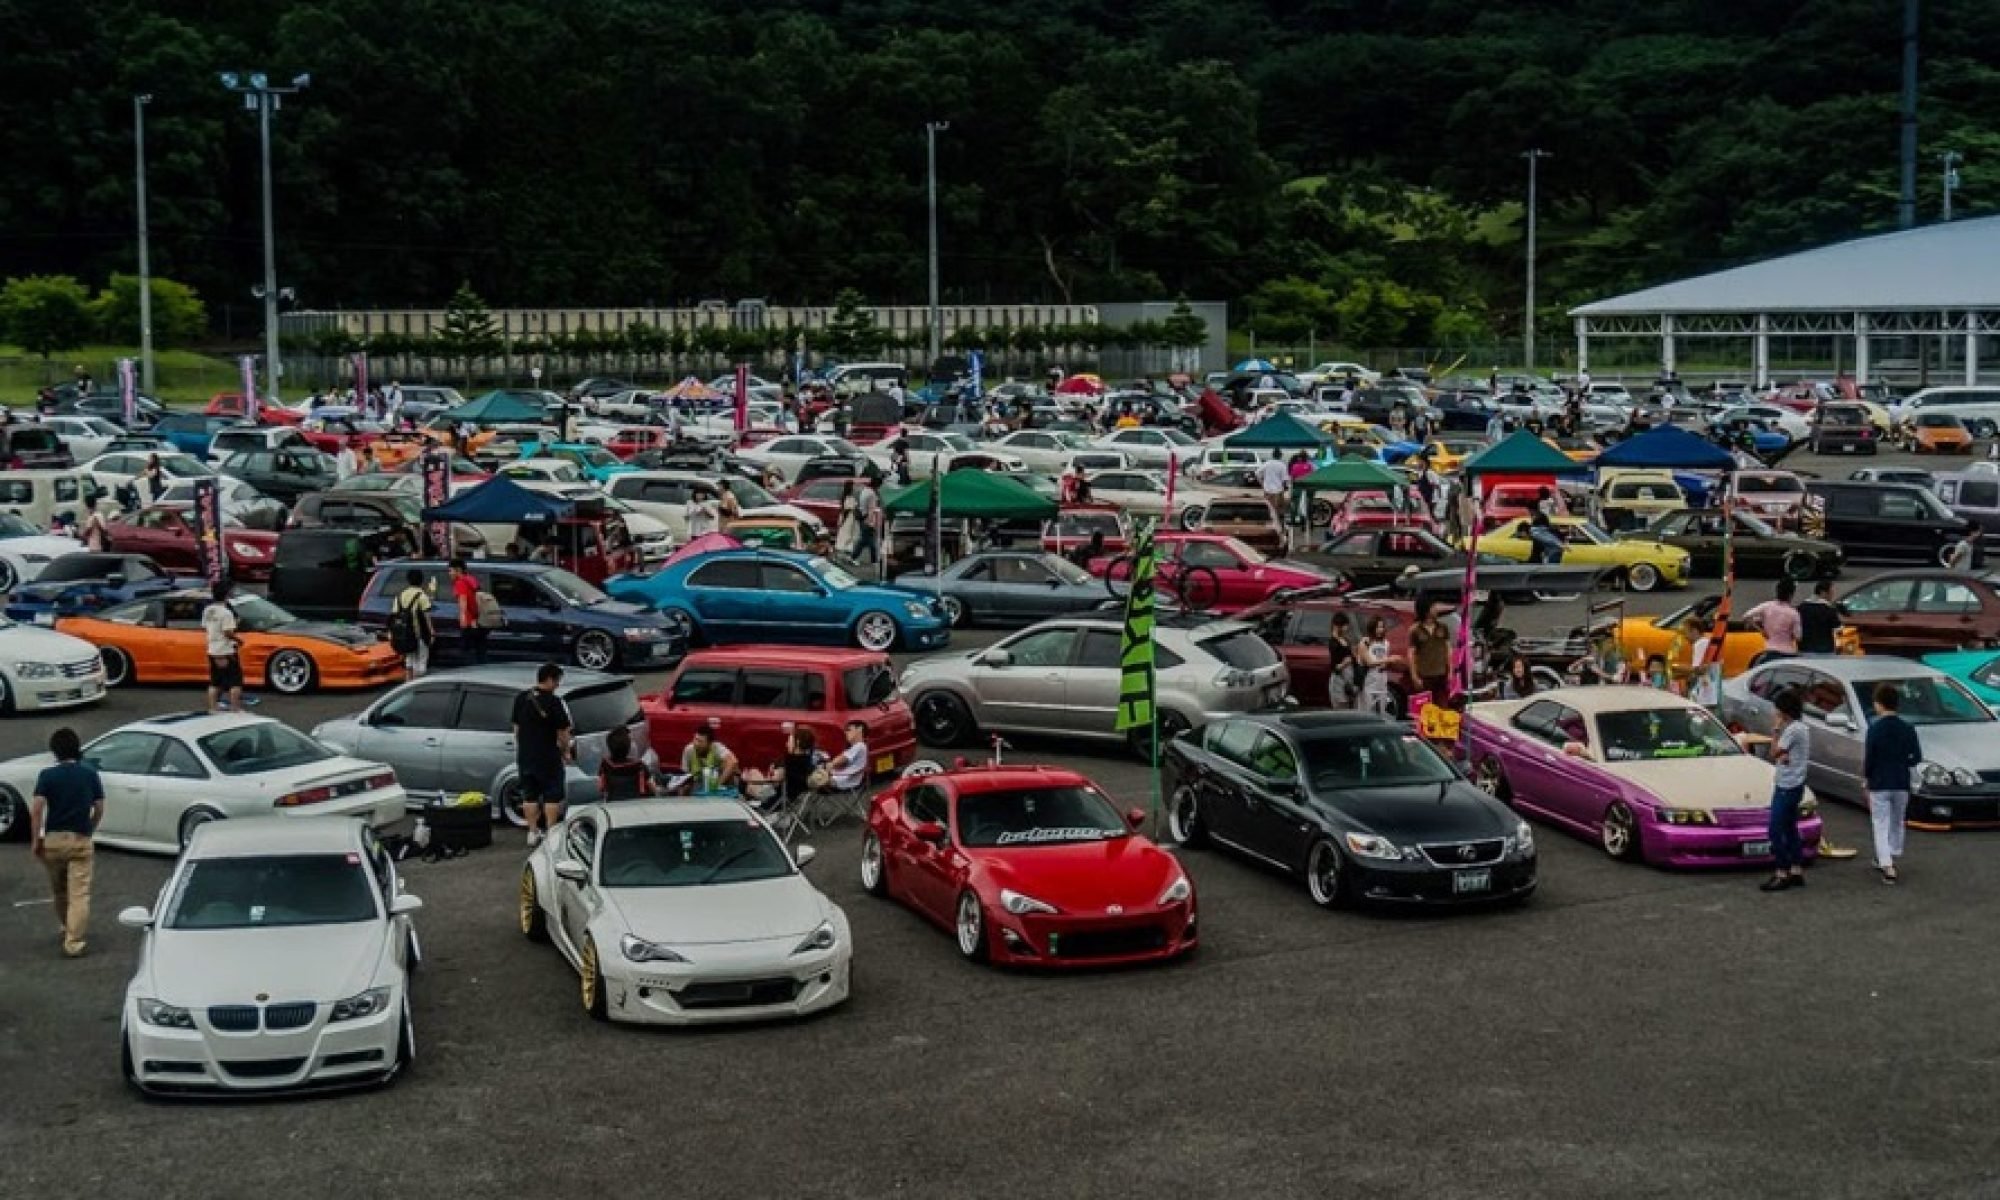 Авто из японии и китая. Японские машины. Выставка японских авто. Японские автомобили много. Много машин.